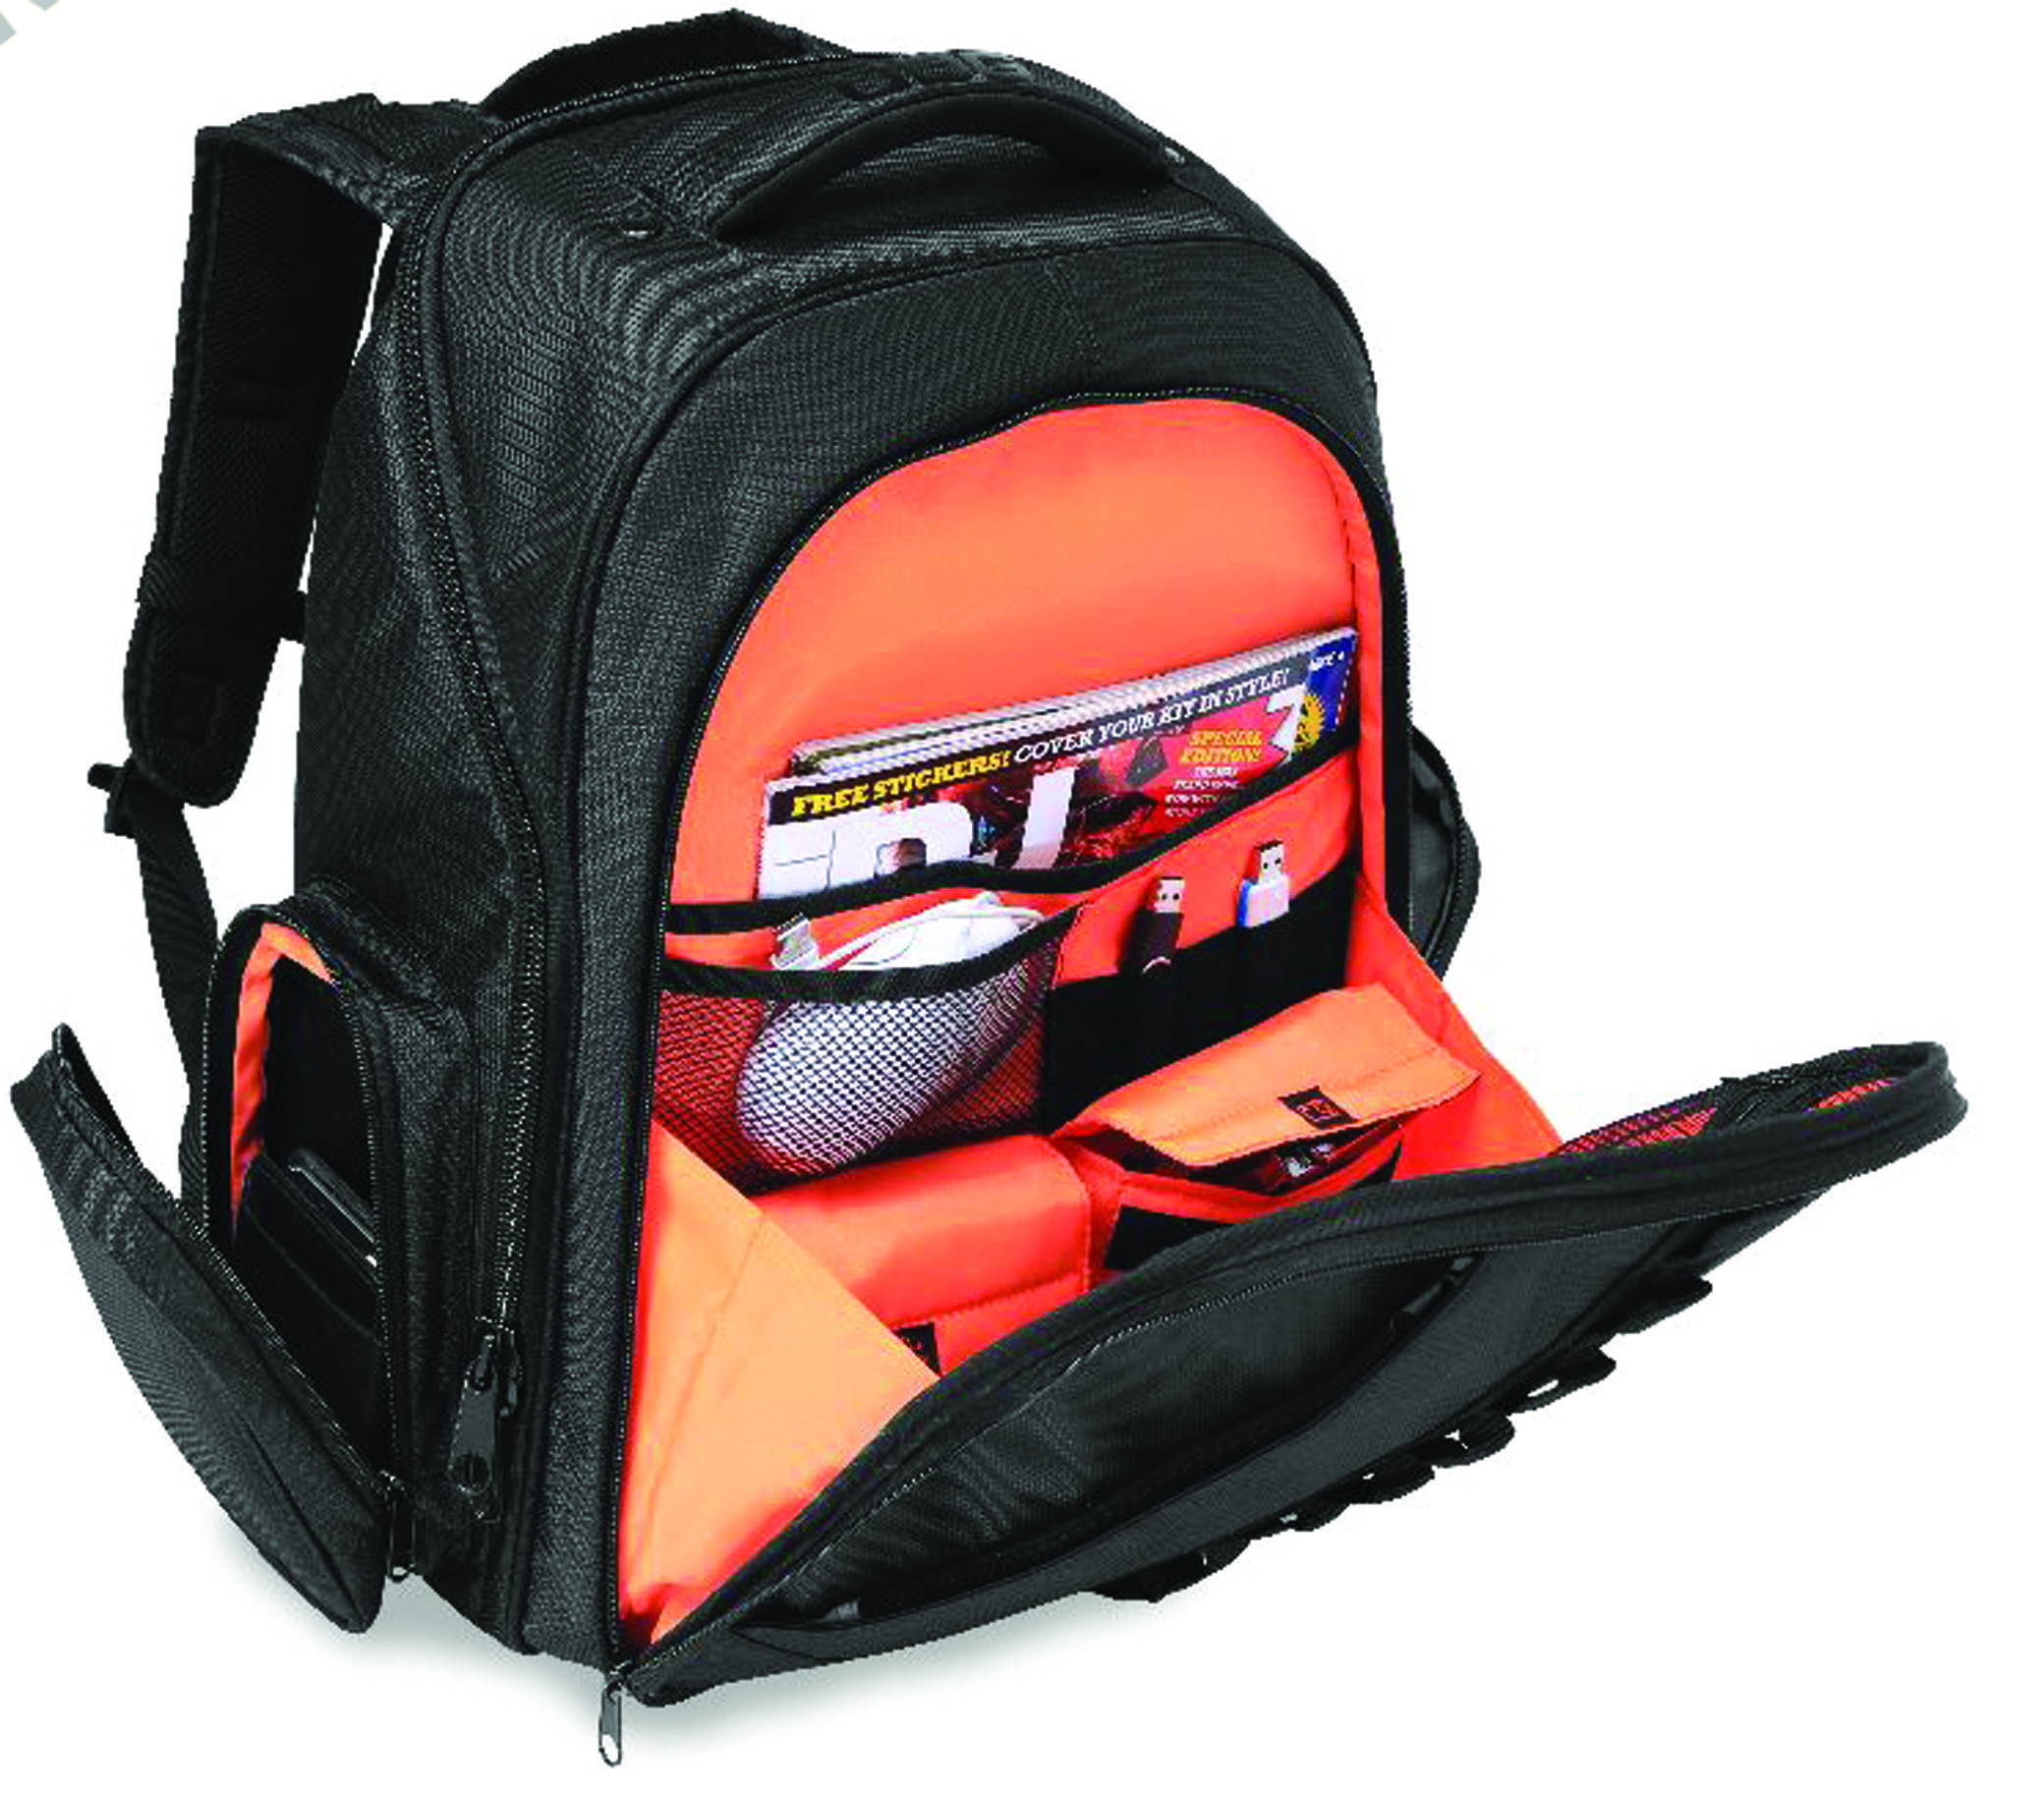 Udg Ultimate Backpack Black/orange - Sac Transport Trolley Dj - Variation 2